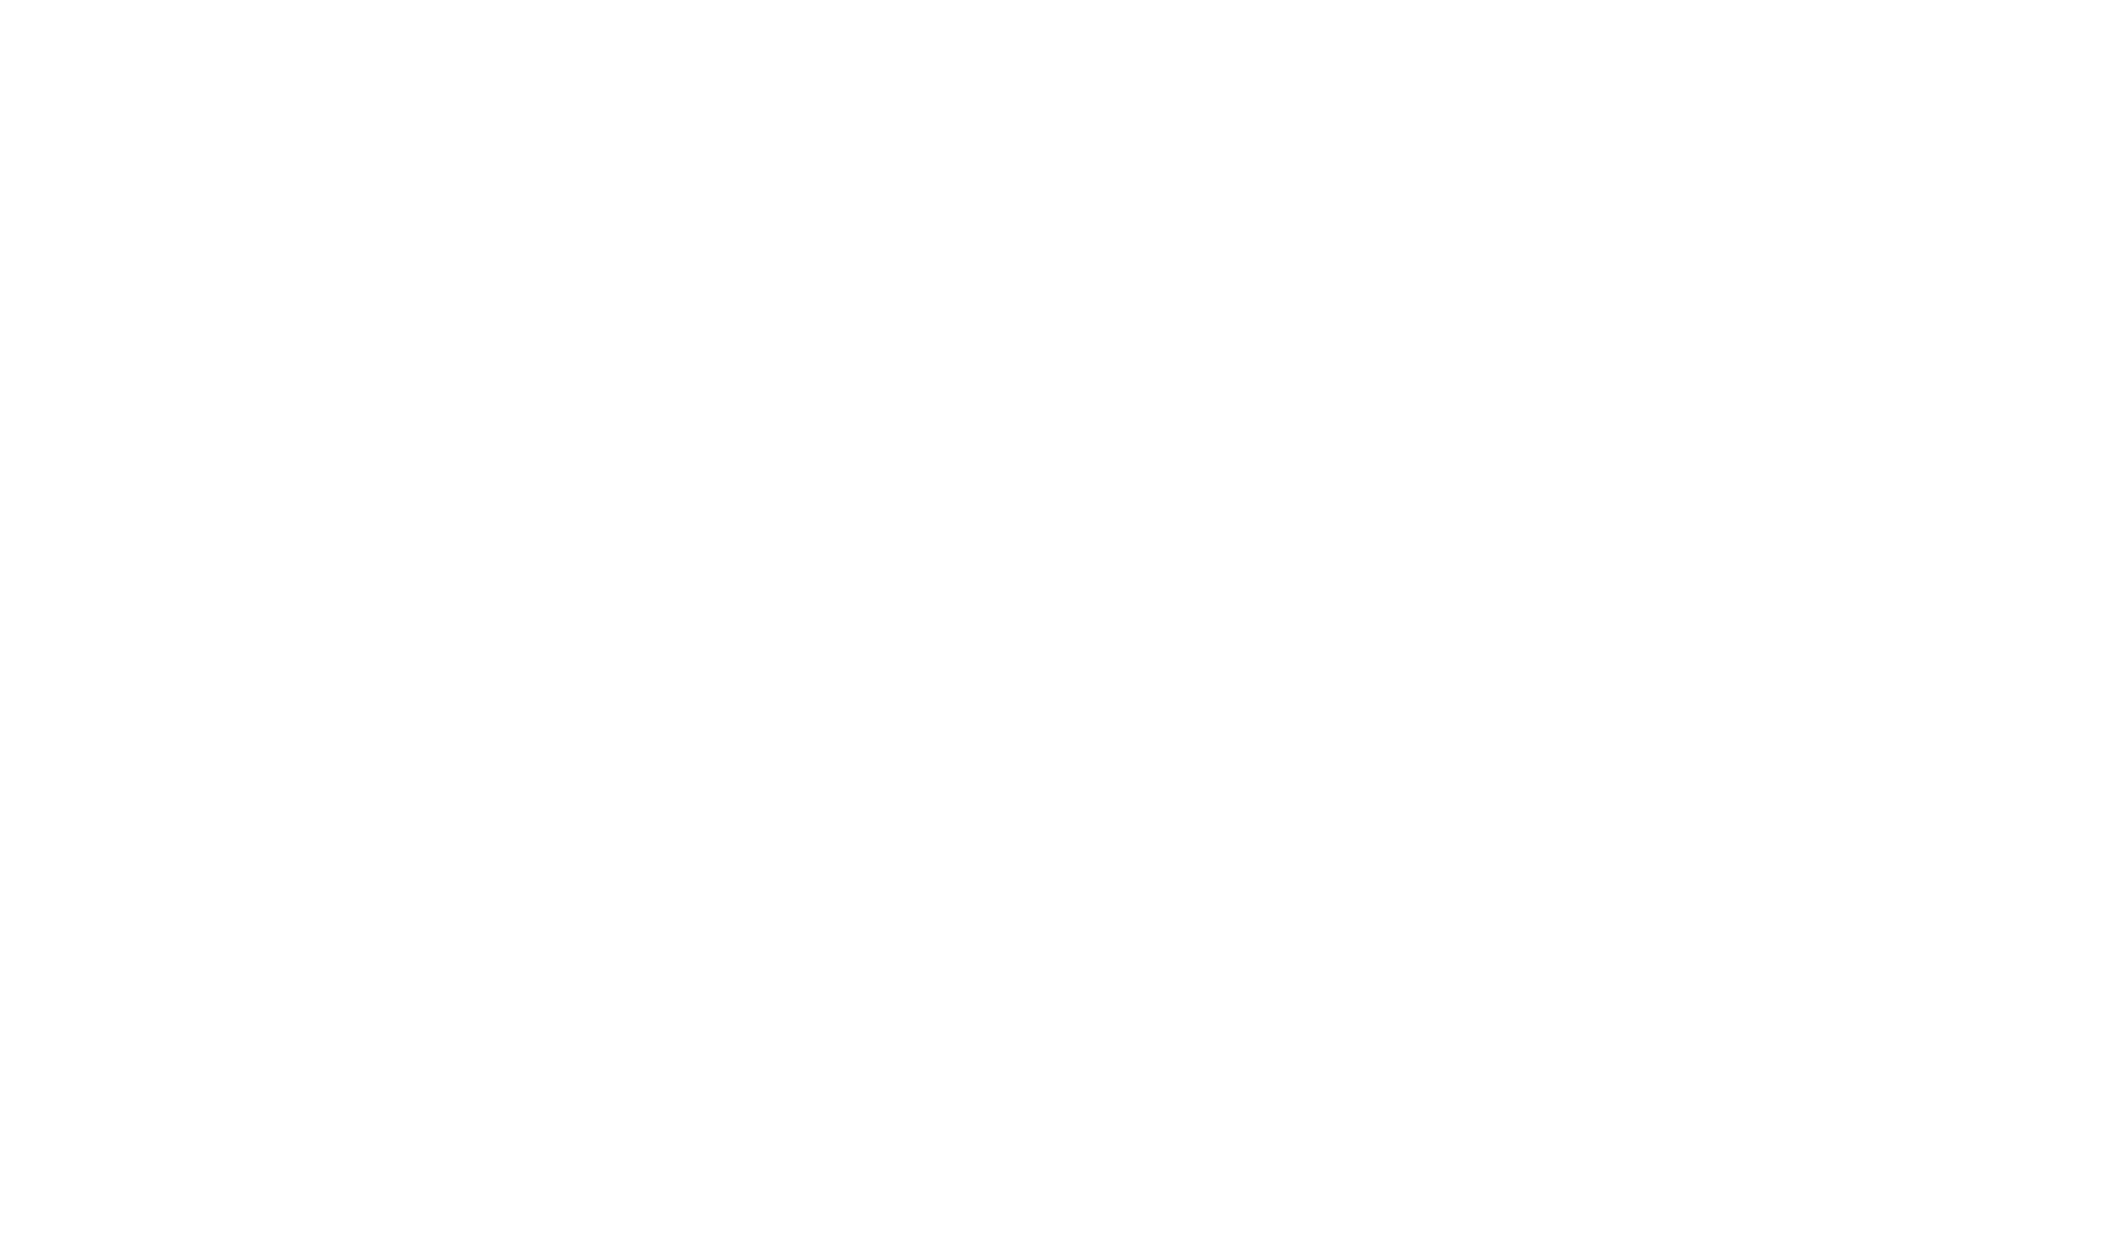 A Wake logo